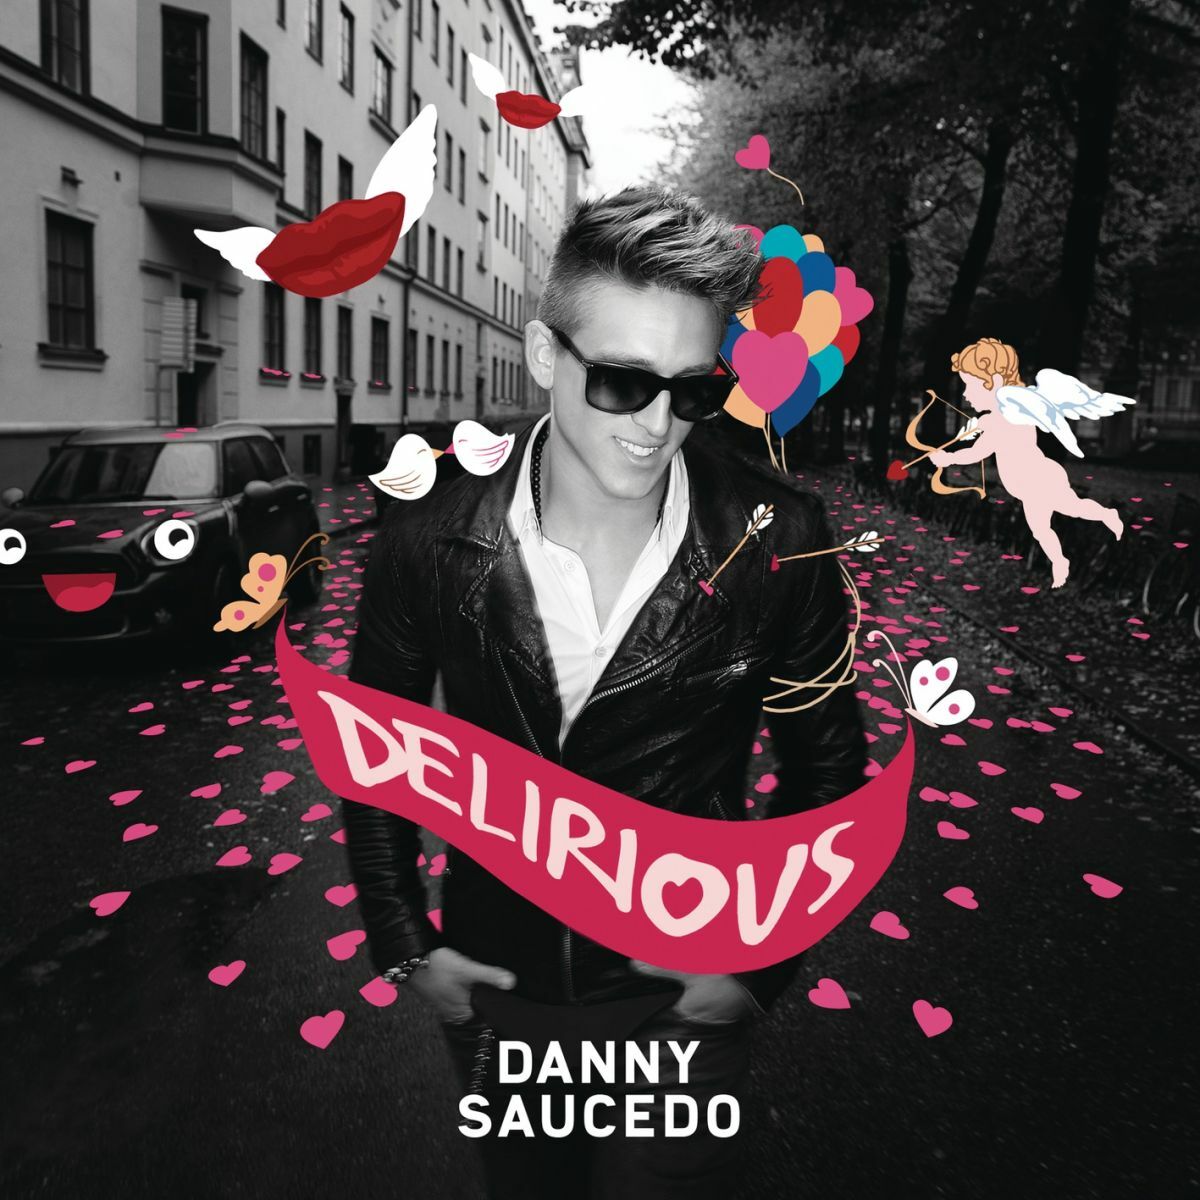 Danny Saucedo — Delirious cover artwork